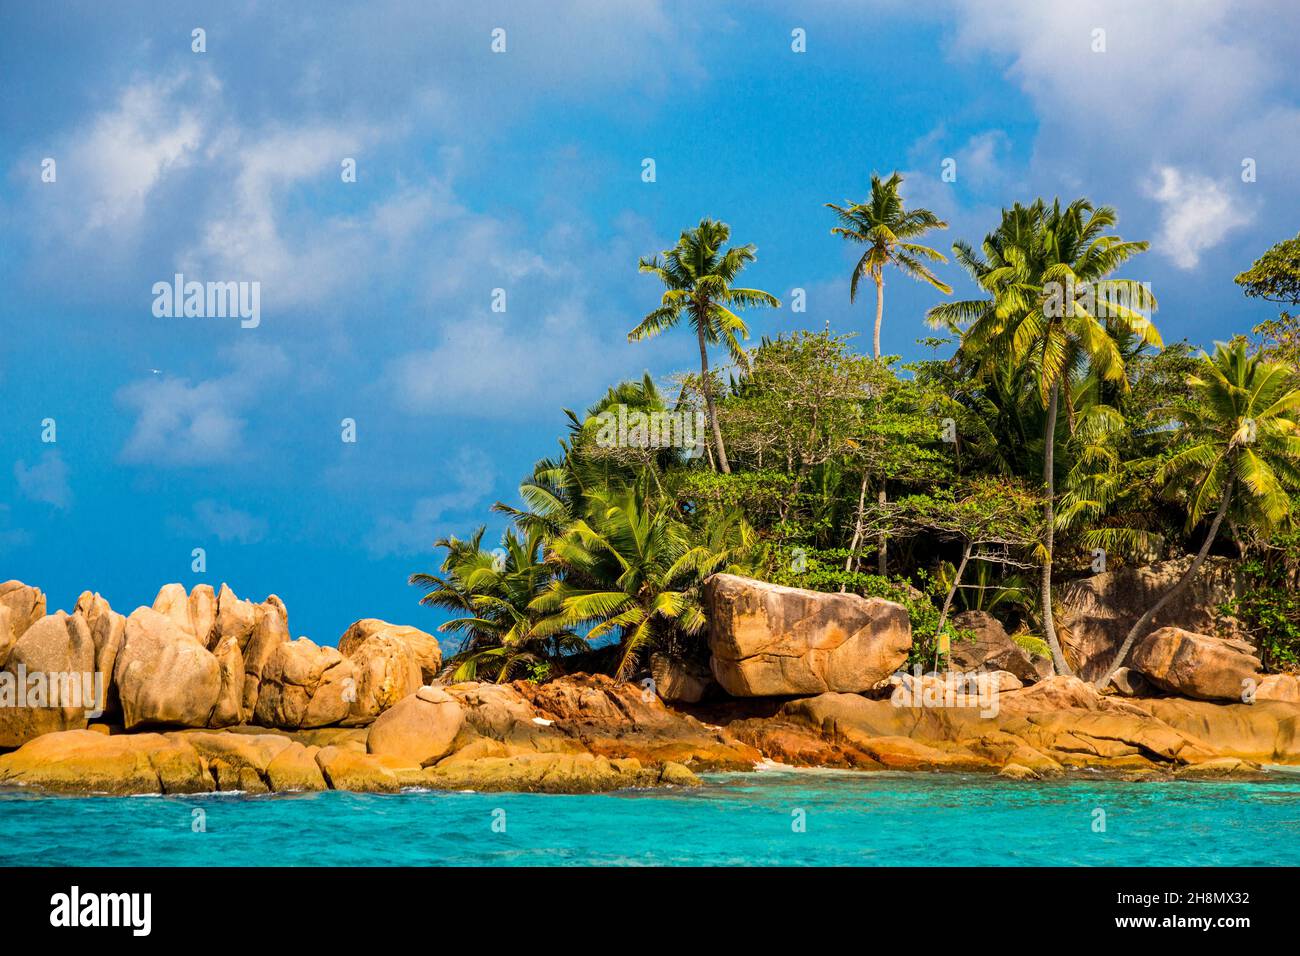 Paradis de la plongée libre, île des Seychelles, mer verte turquoise rochers de granit, St Pierre, Seychelles, St Pierre, Praslin,Seychelles Banque D'Images